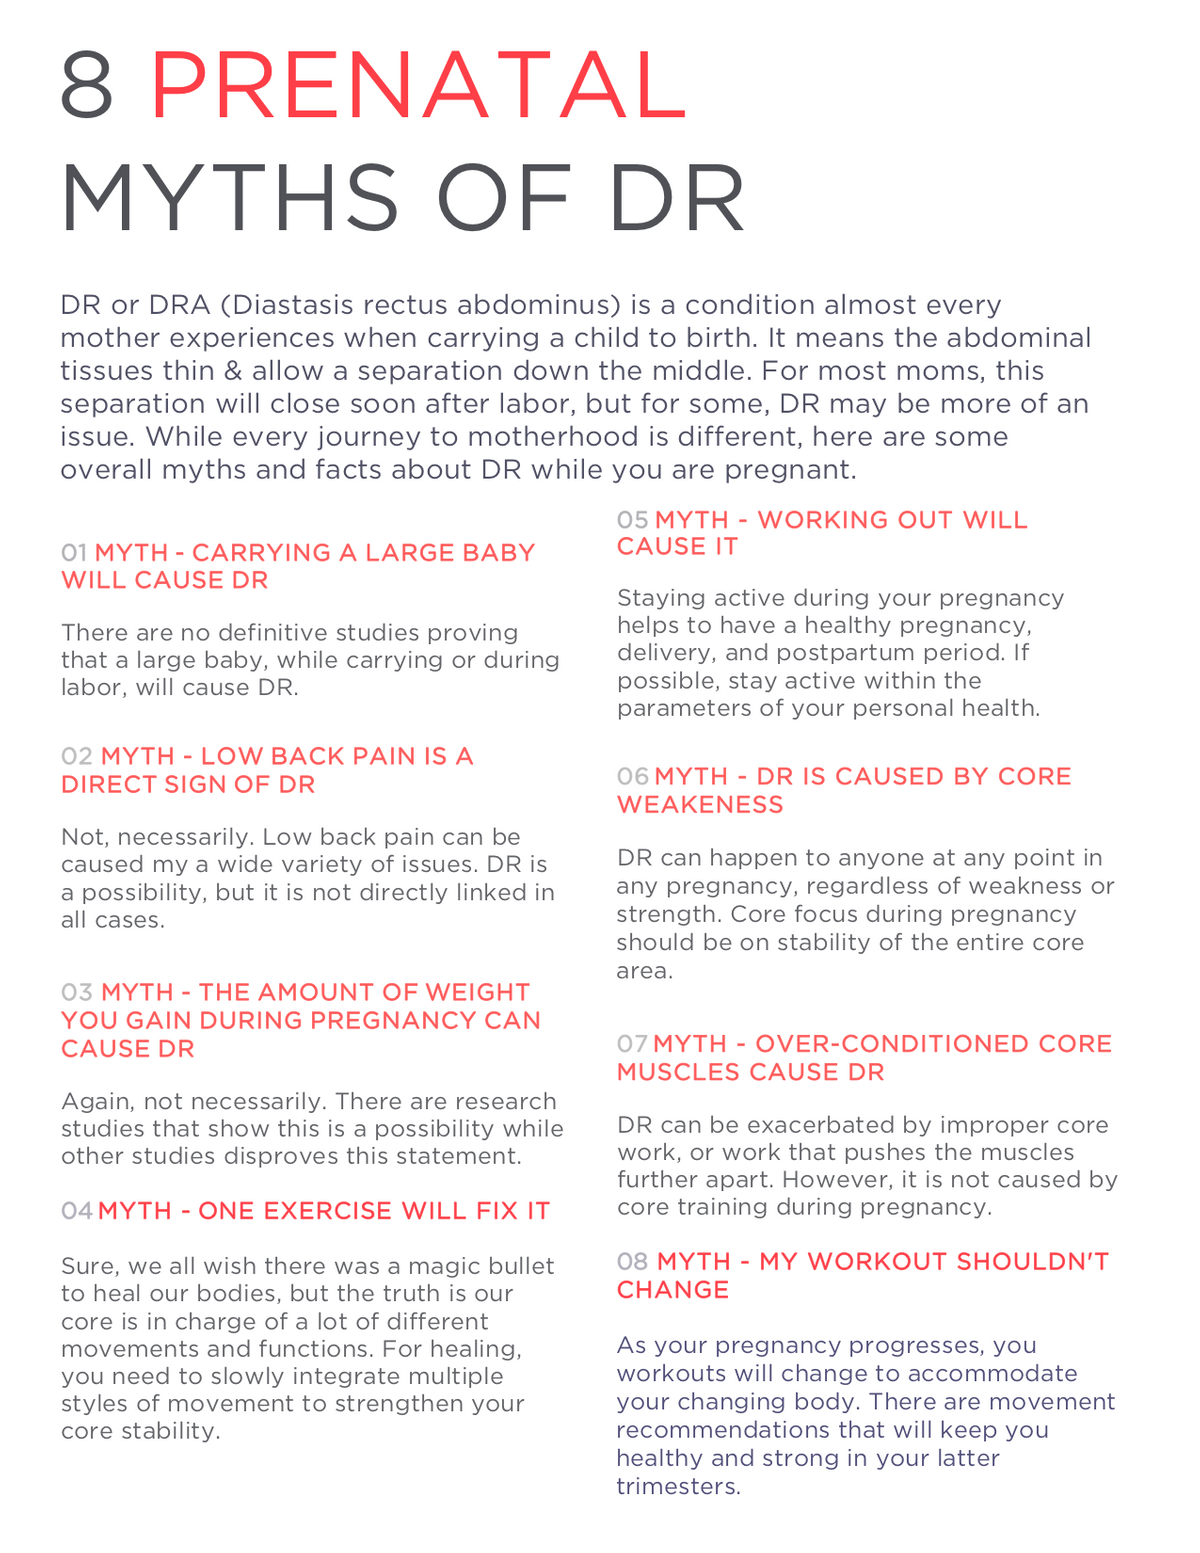 Prenatal Myths for DR.png